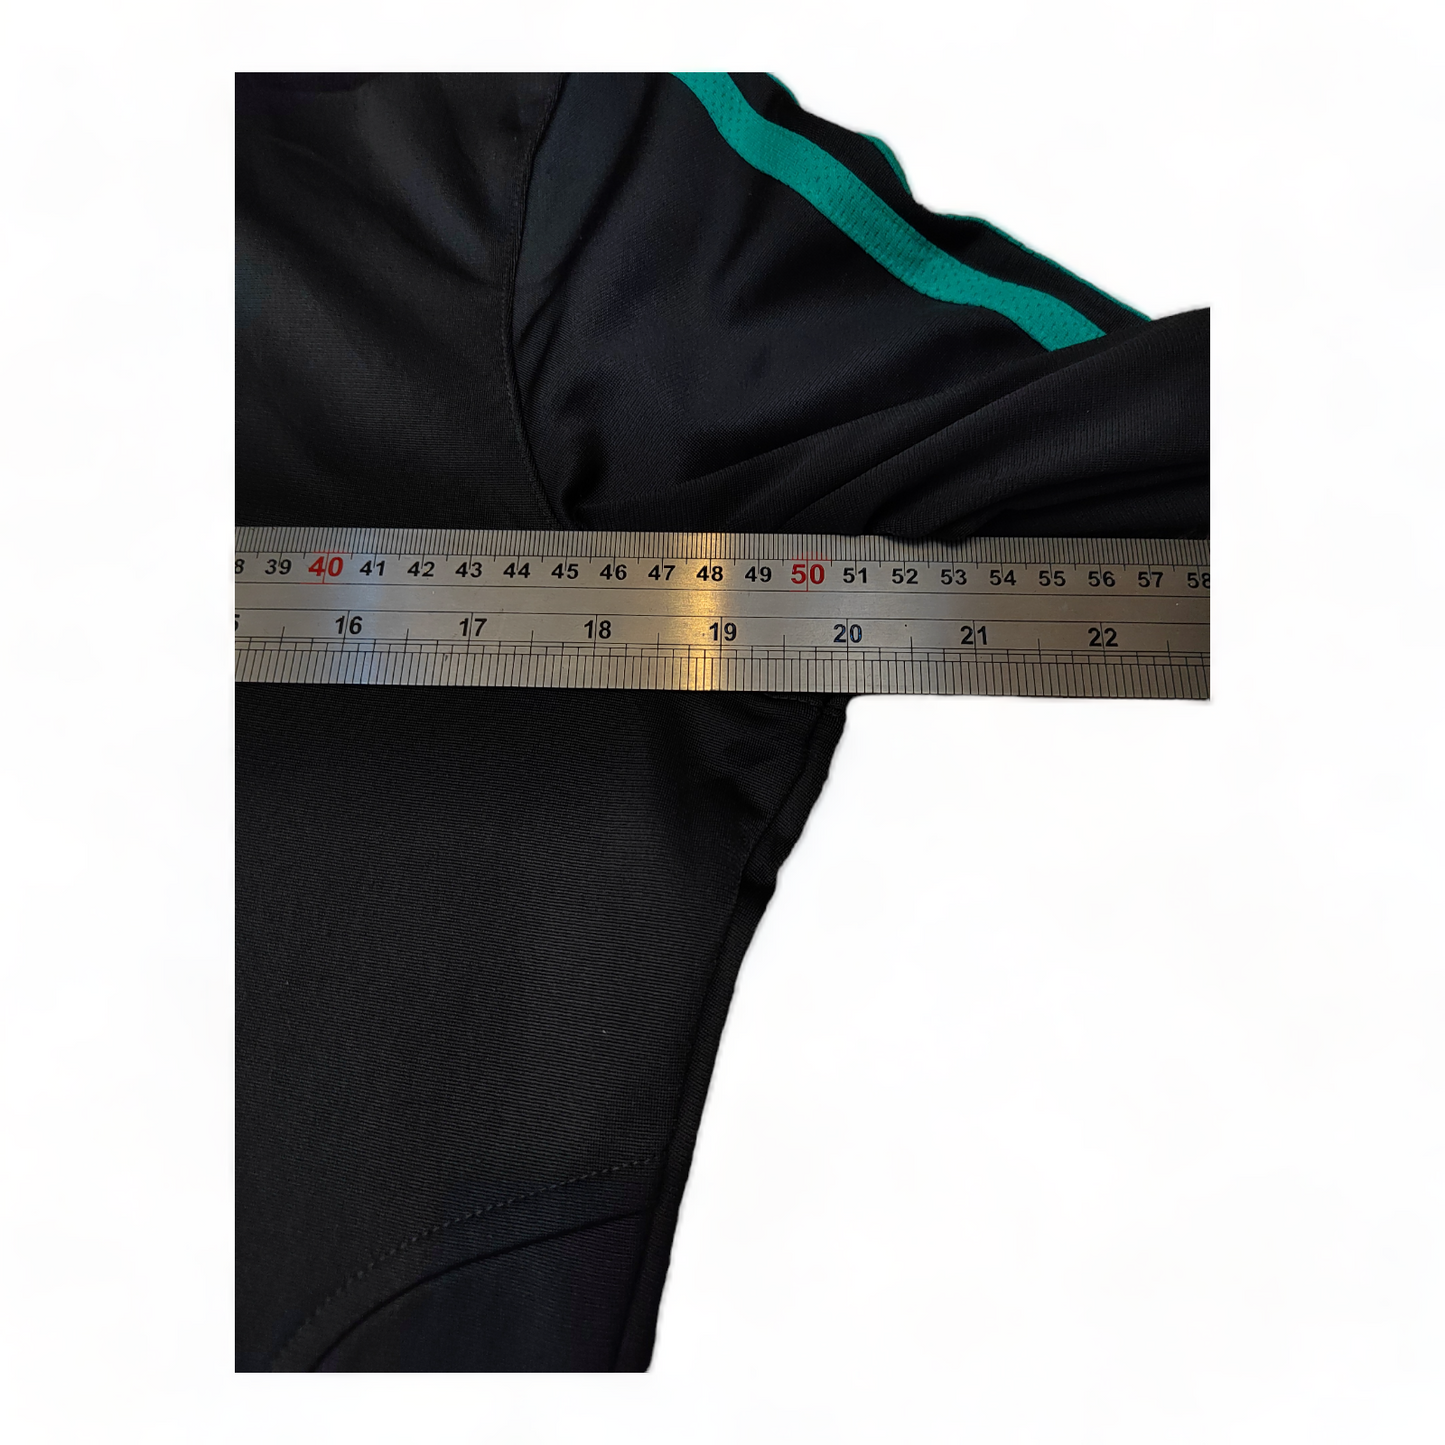 Adidas Mens Jumper Small / Medium Black Zip Up Sweatshirt